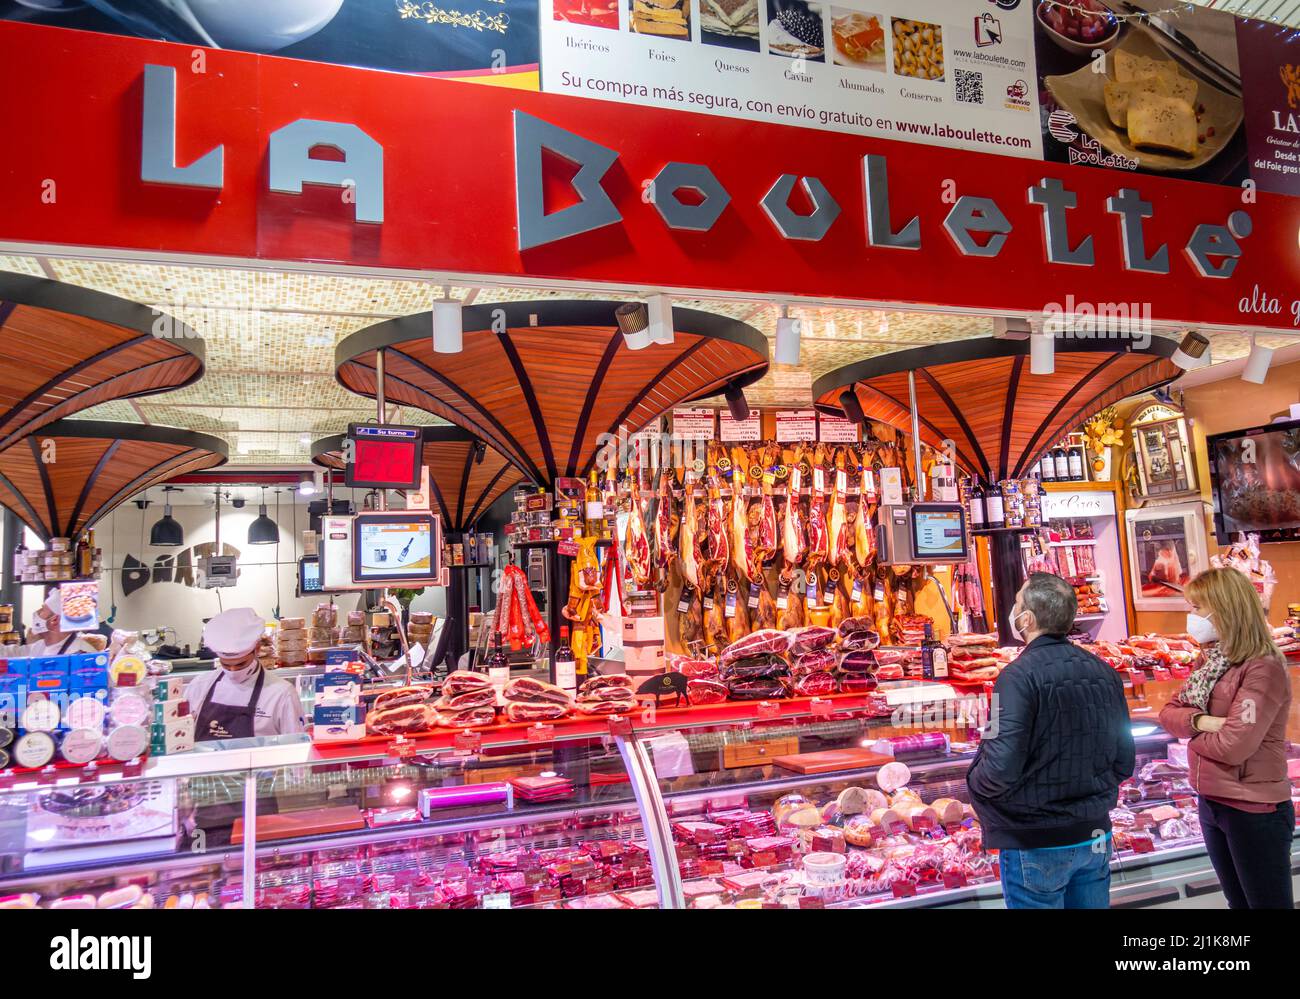 La Boulette meat sausage stall shop inside Mercado de la Paz, Salamanca, Madrid, Spain Stock Photo